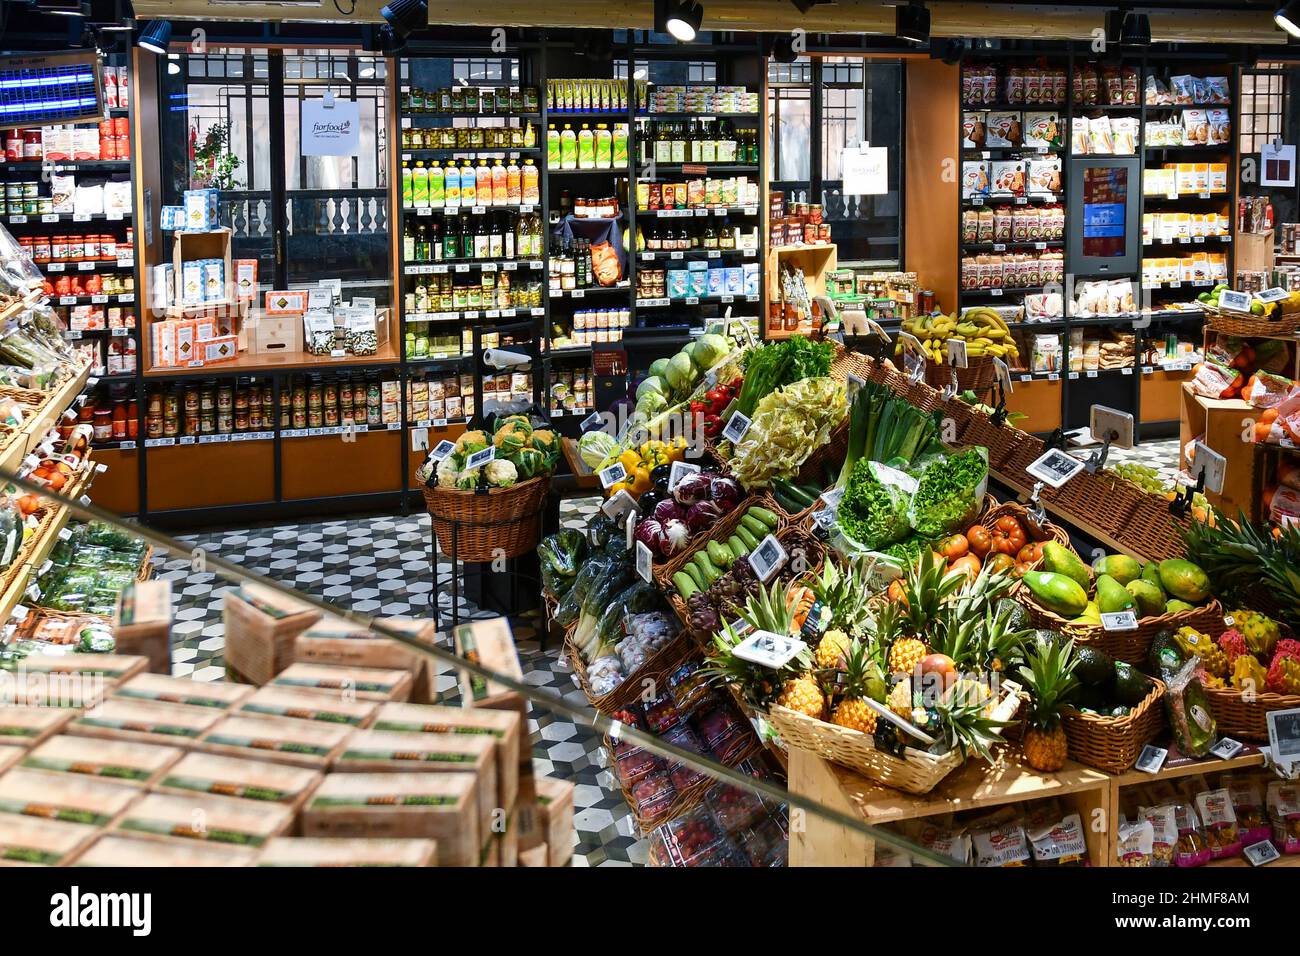 All'interno del negozio di alimentari Fiorfood Coop con frutta, verdura e prodotti tipici della Galleria San Federico, Torino, Piemonte, Italia Foto Stock